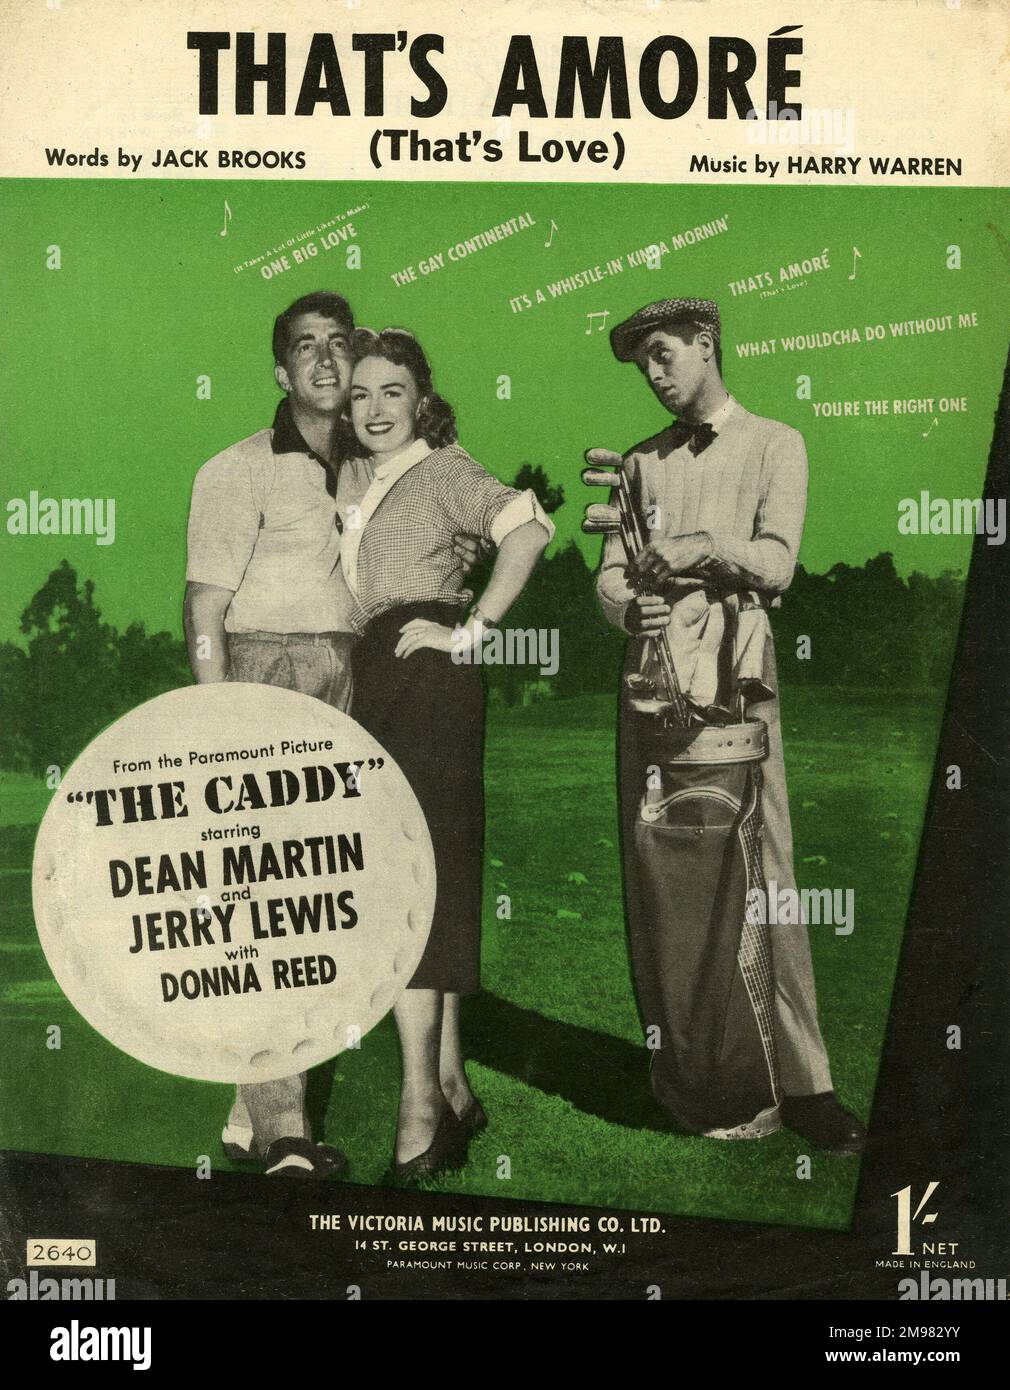 Musikcover, das ist Amore, Worte von Jack Brooks, Musik von Harry Warren. Dean Martin, Jerry Lewis und Donna Reed auf einem Golfplatz im Film The Caddy zu zeigen. Stockfoto